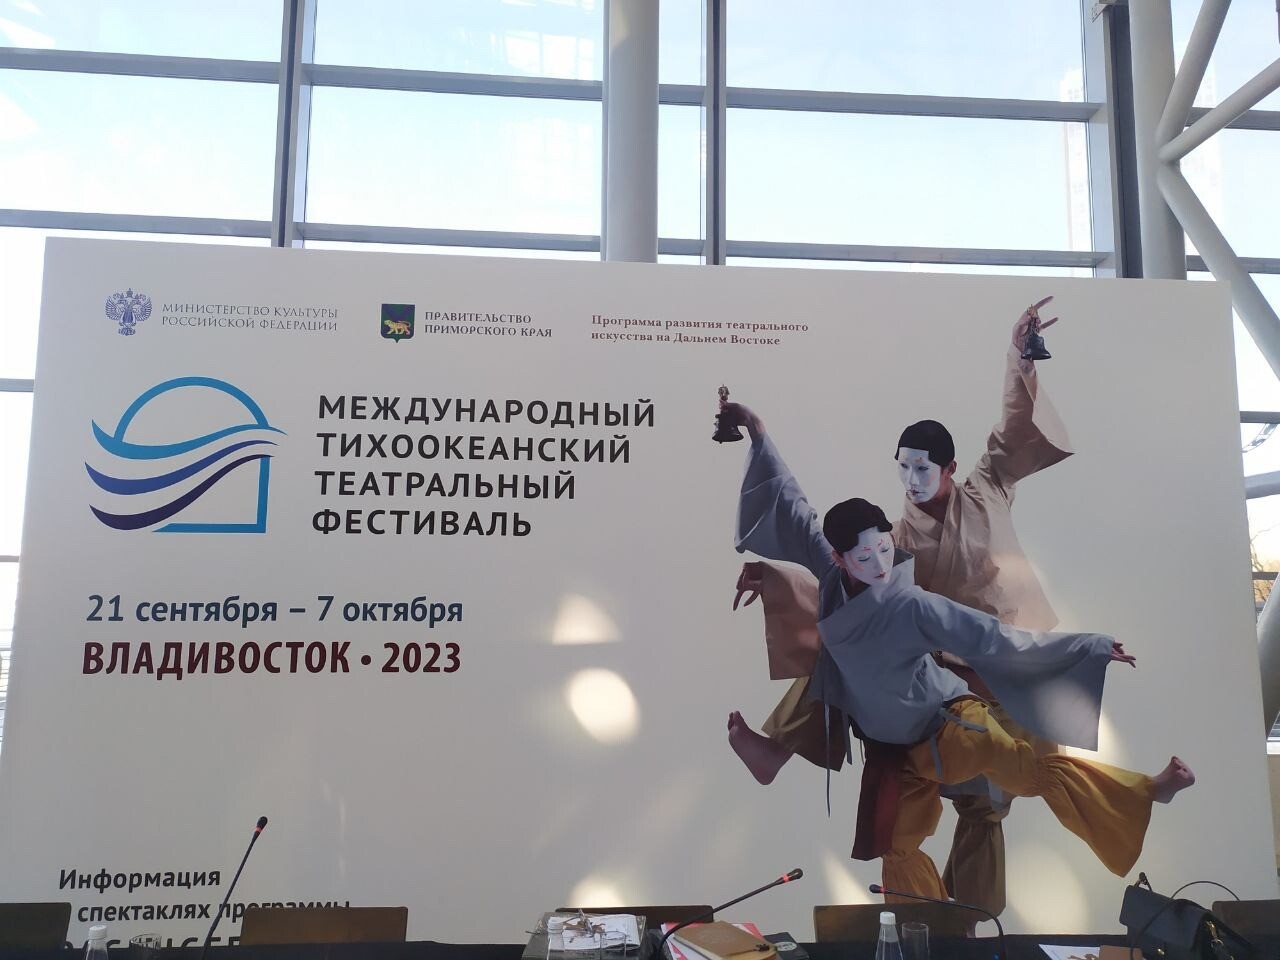 Второй Международный Тихоокеанский театральный фестиваль состоится во Владивостоке в 2023 году